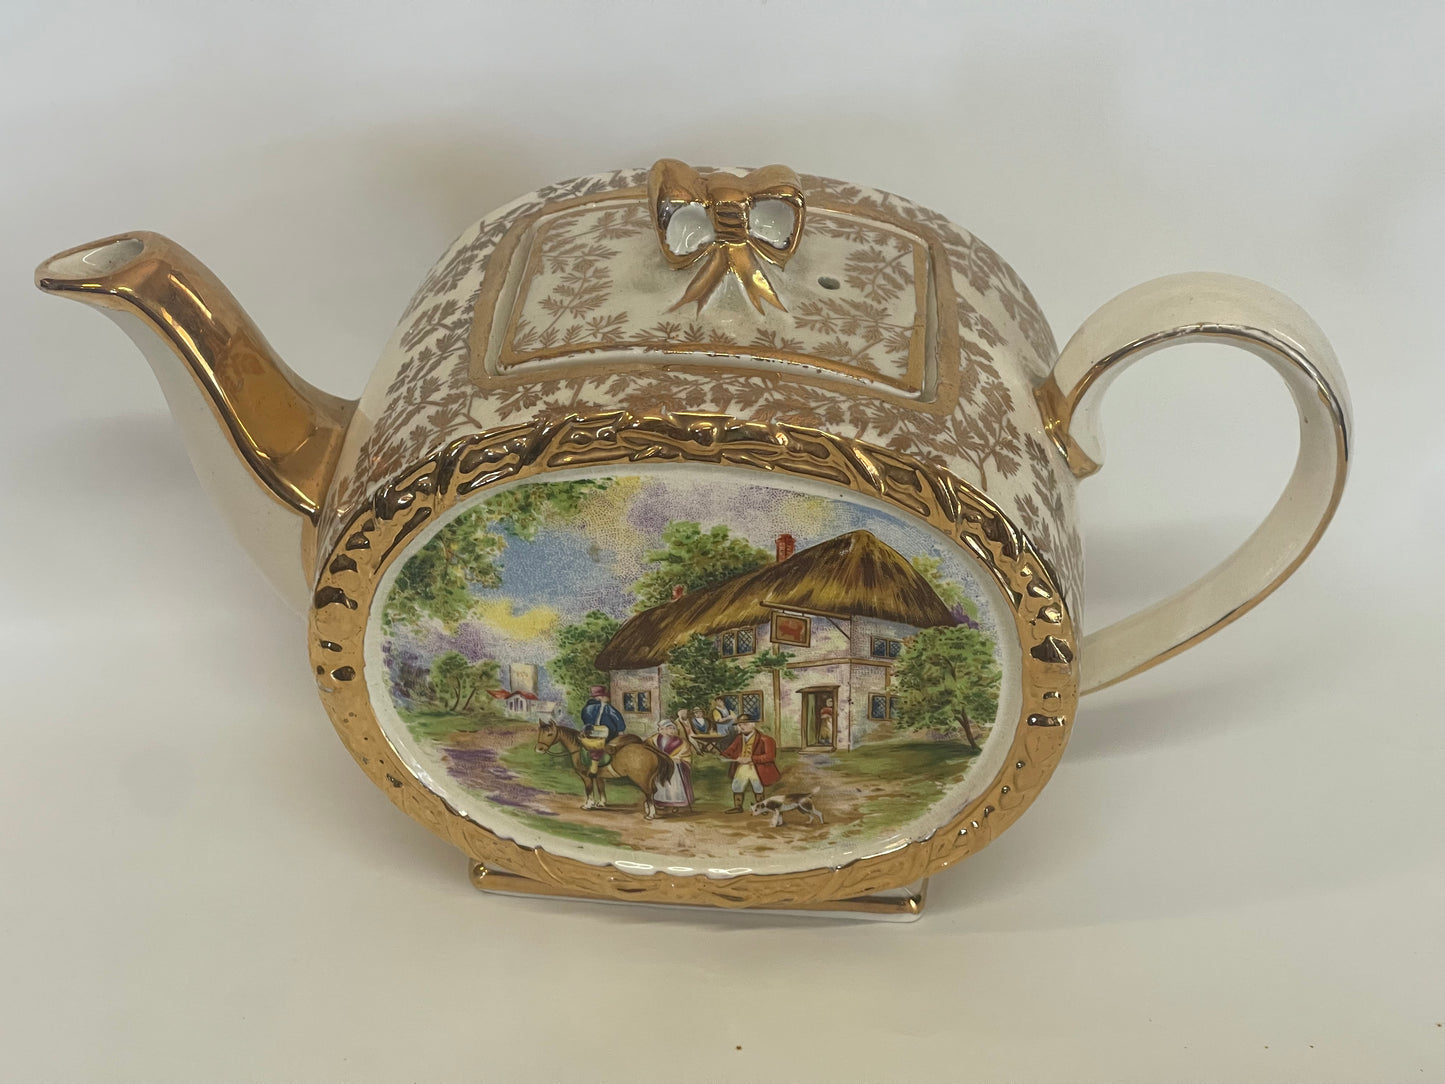 Vintage 1930s Sadler Barrel Tea Pot with Country Tavern Scene